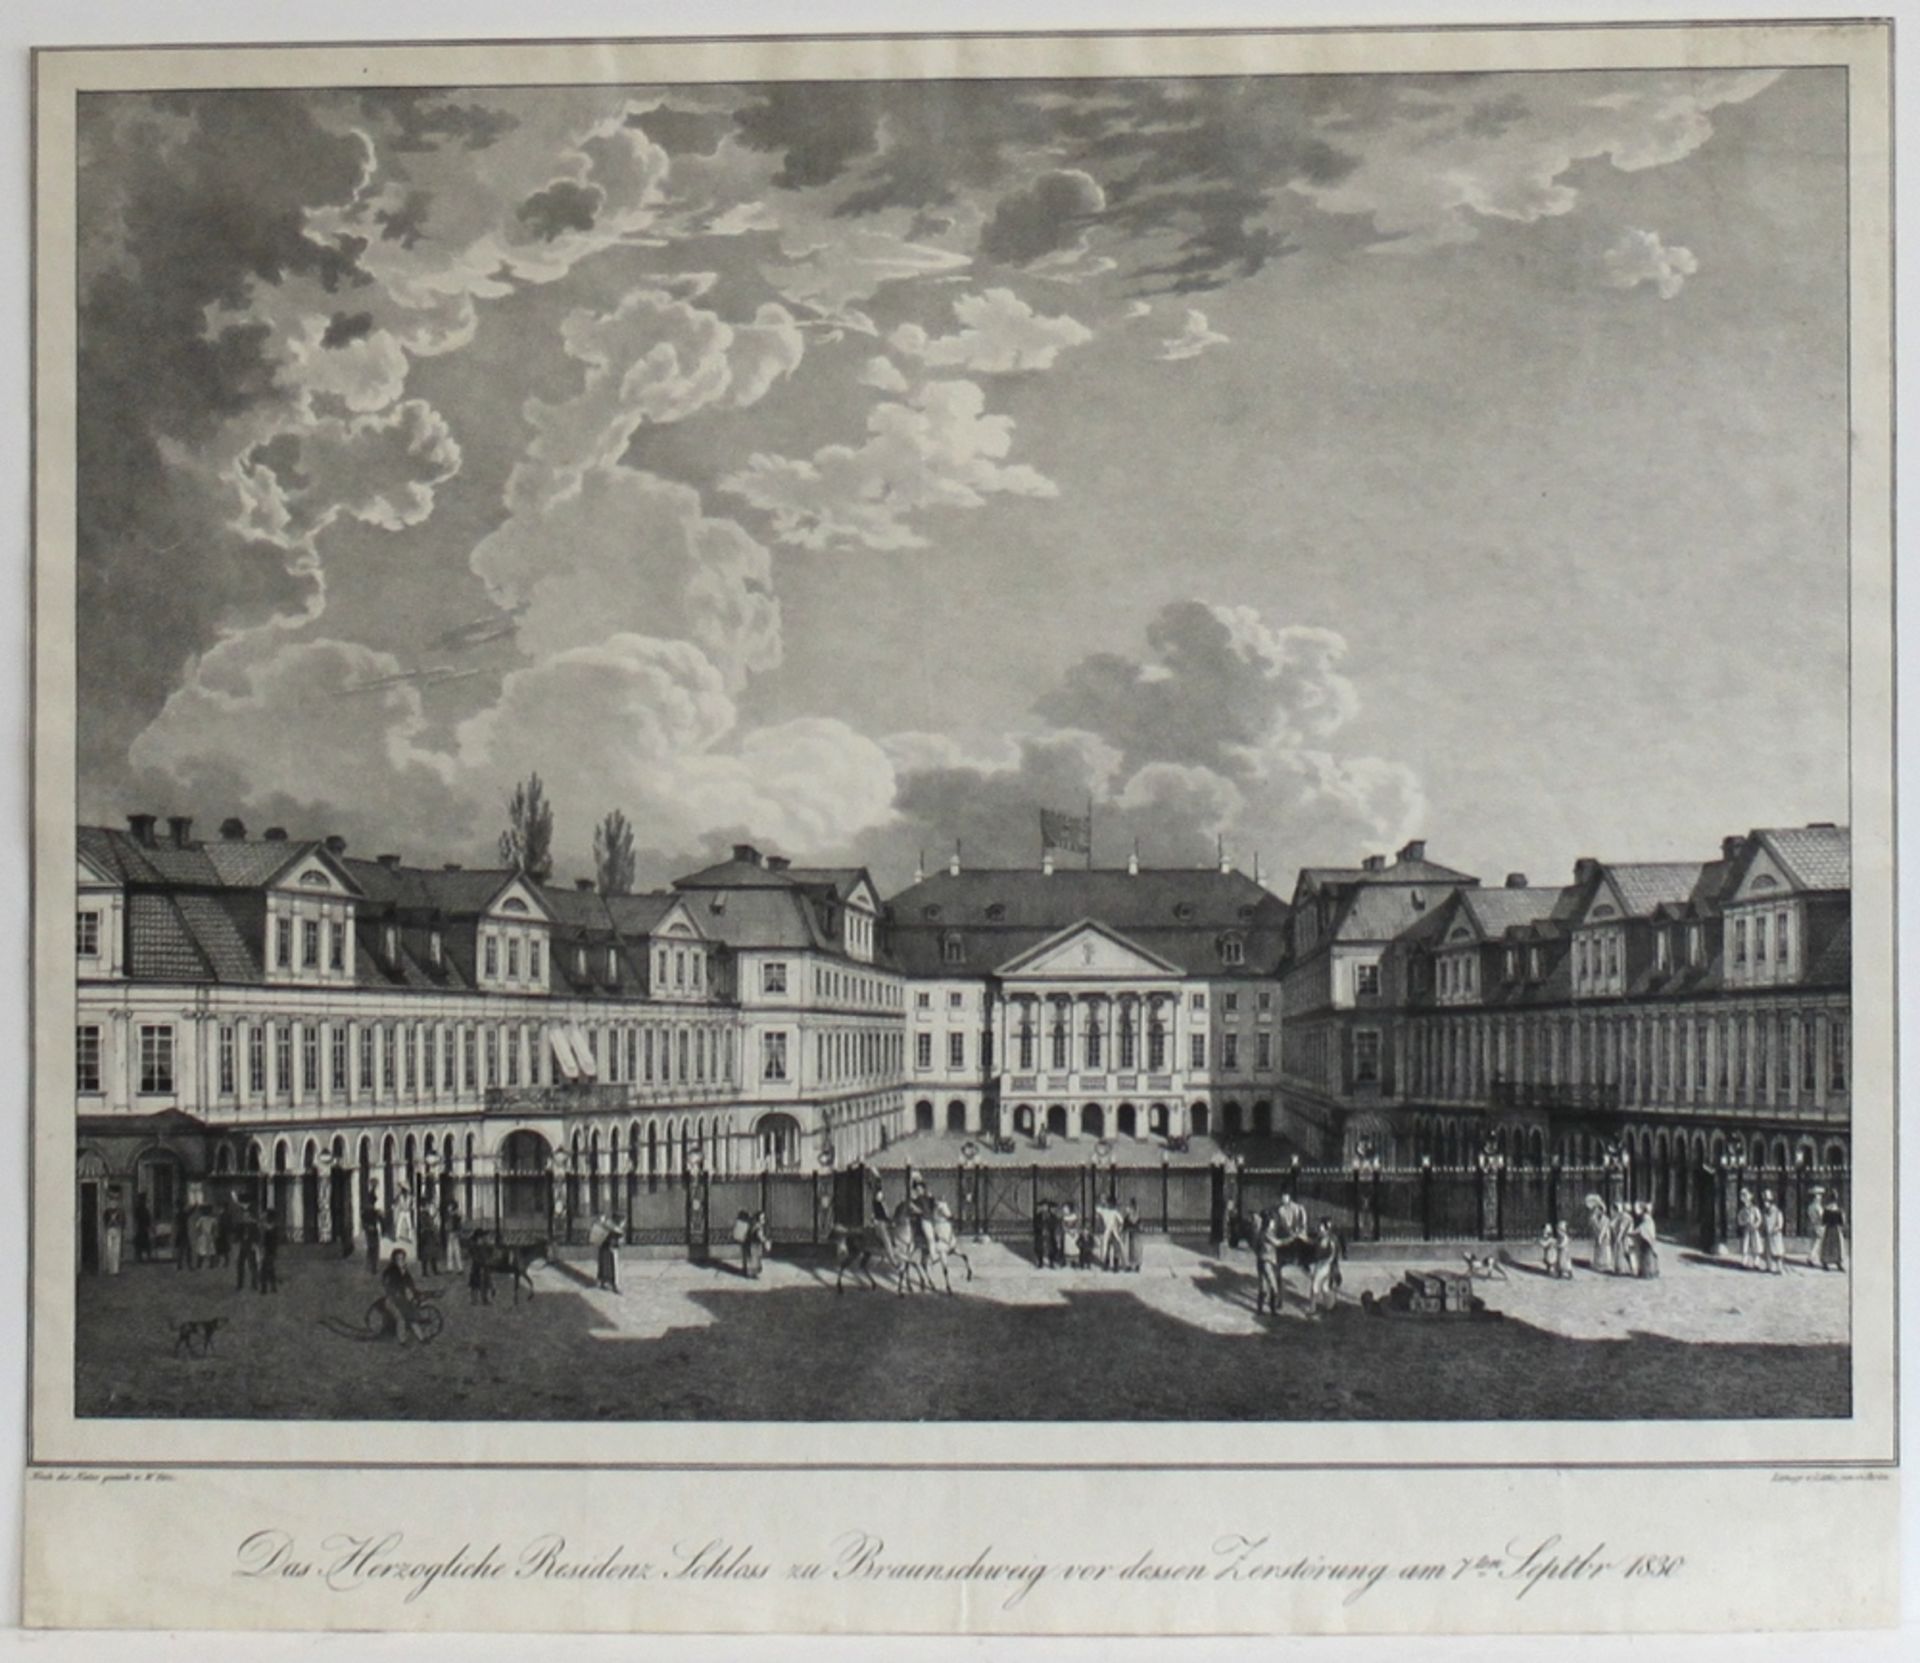 Braunschweig. (Der graue Hof) "Das Herzogliche Residenz Schloss zu Braunschweig vor dessen Zerstörun